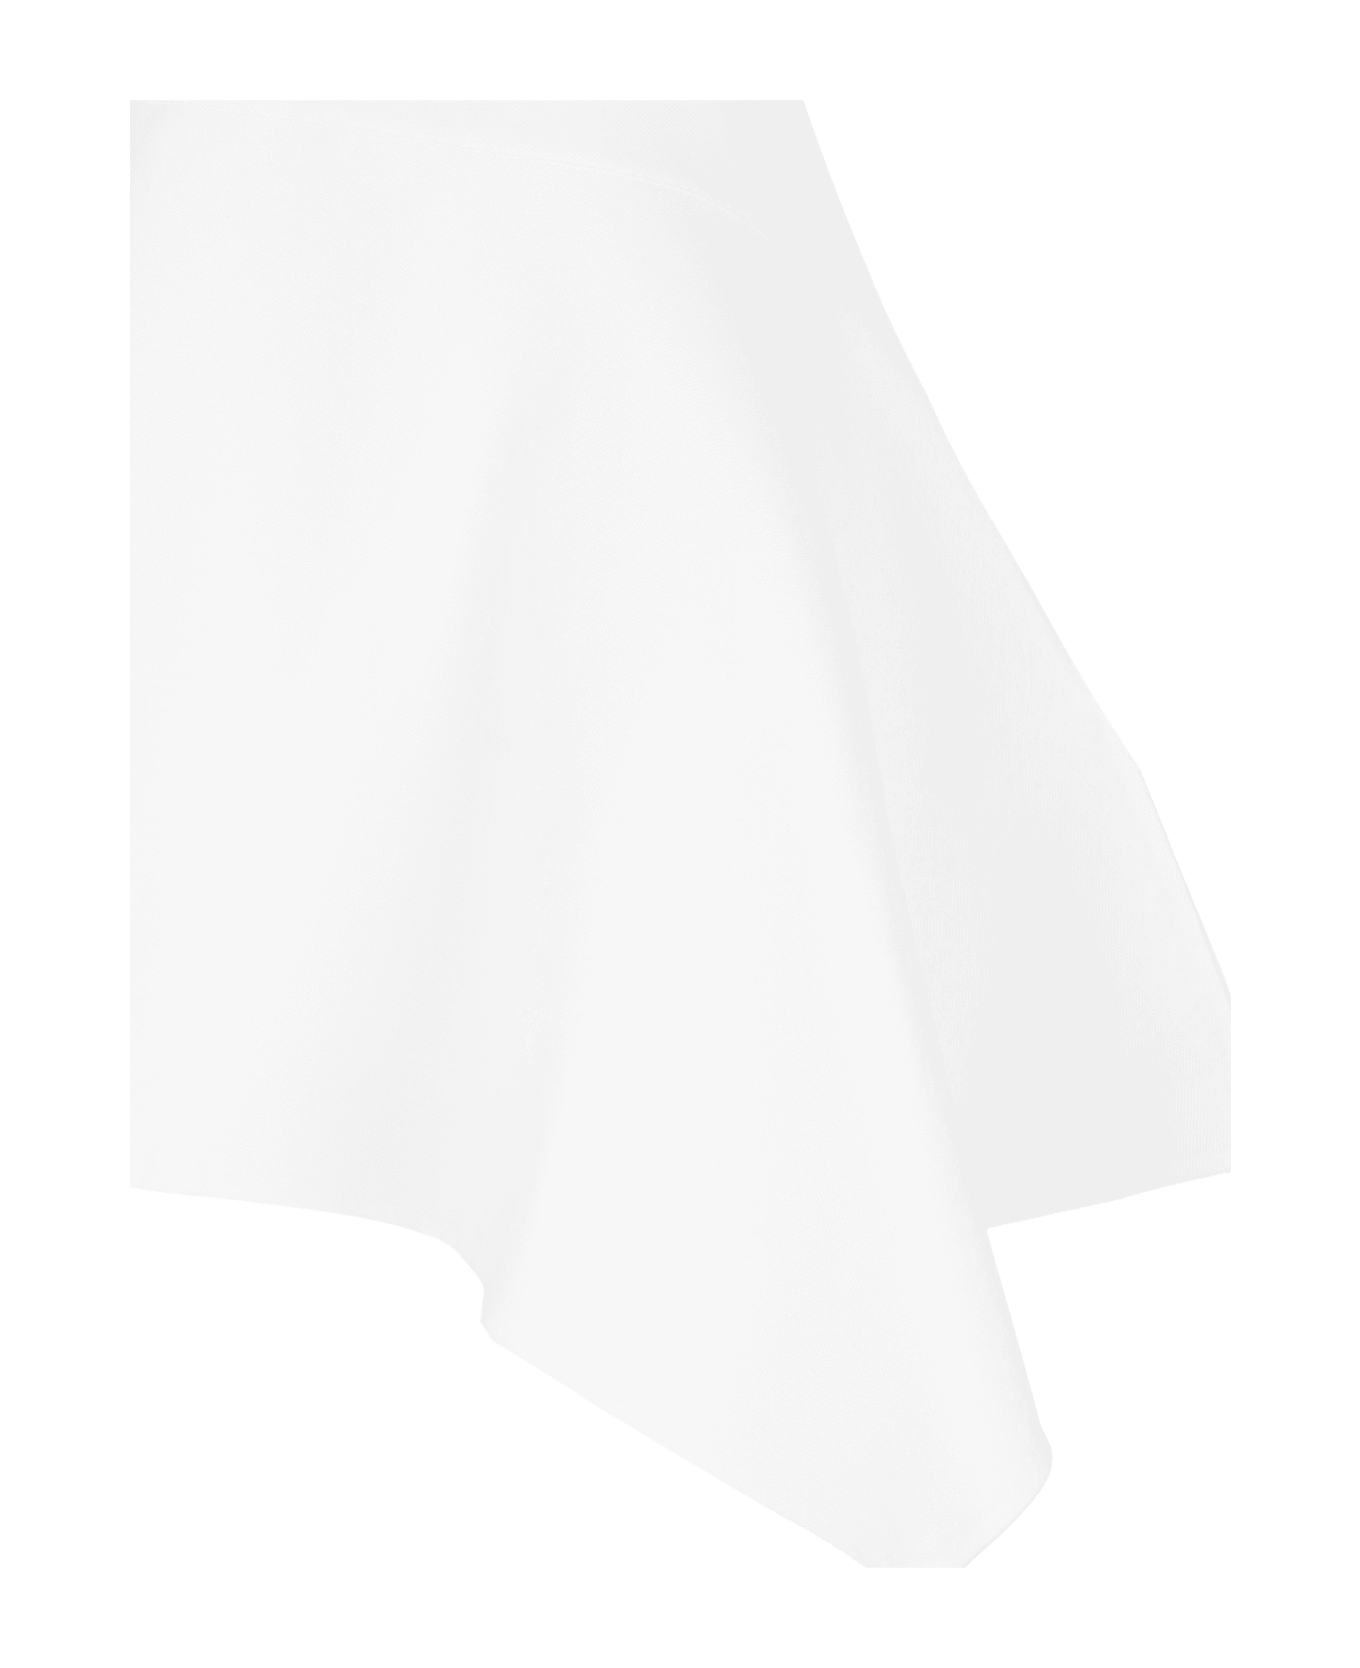 J.W. Anderson Asymmetrical Polo Dress - White ワンピース＆ドレス